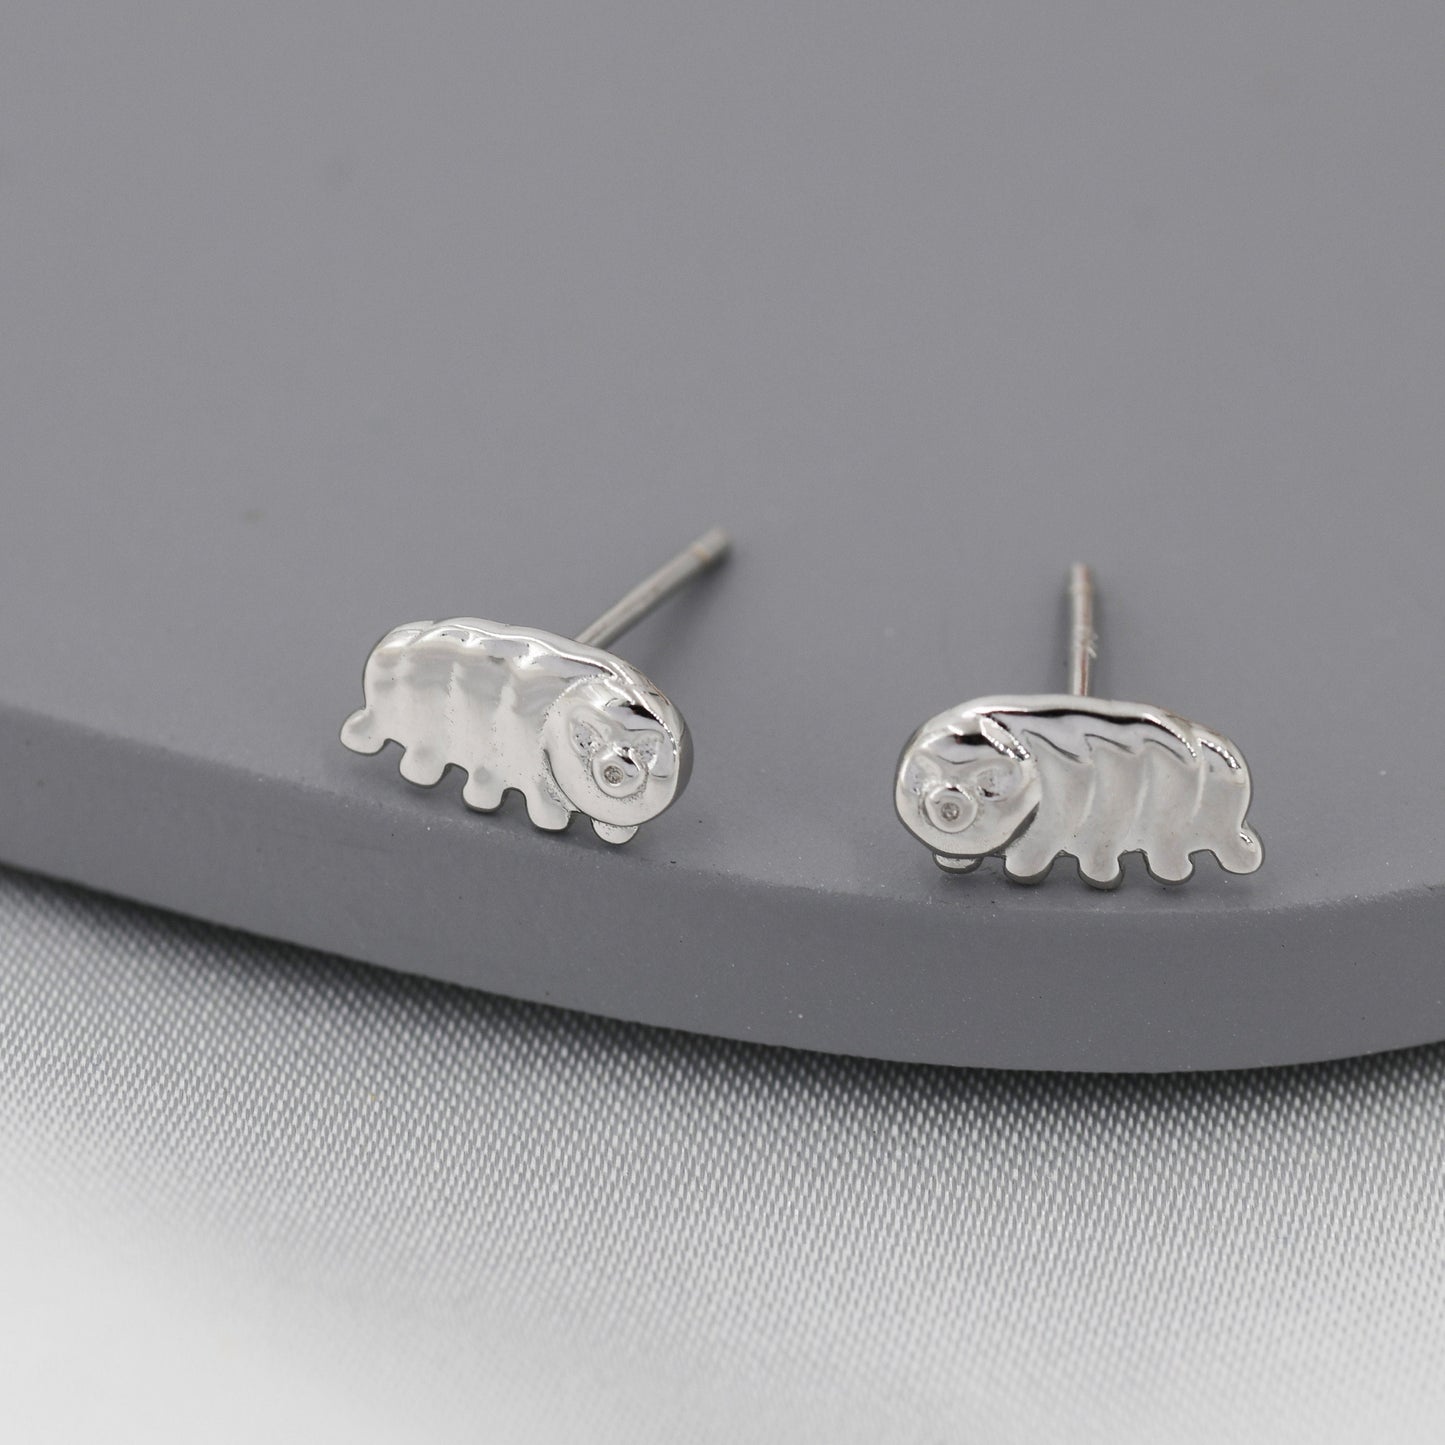 Water Bear Stud Earrings in Sterling Silver, Tardigrades Earrings, Nature Inspired Animal Earrings